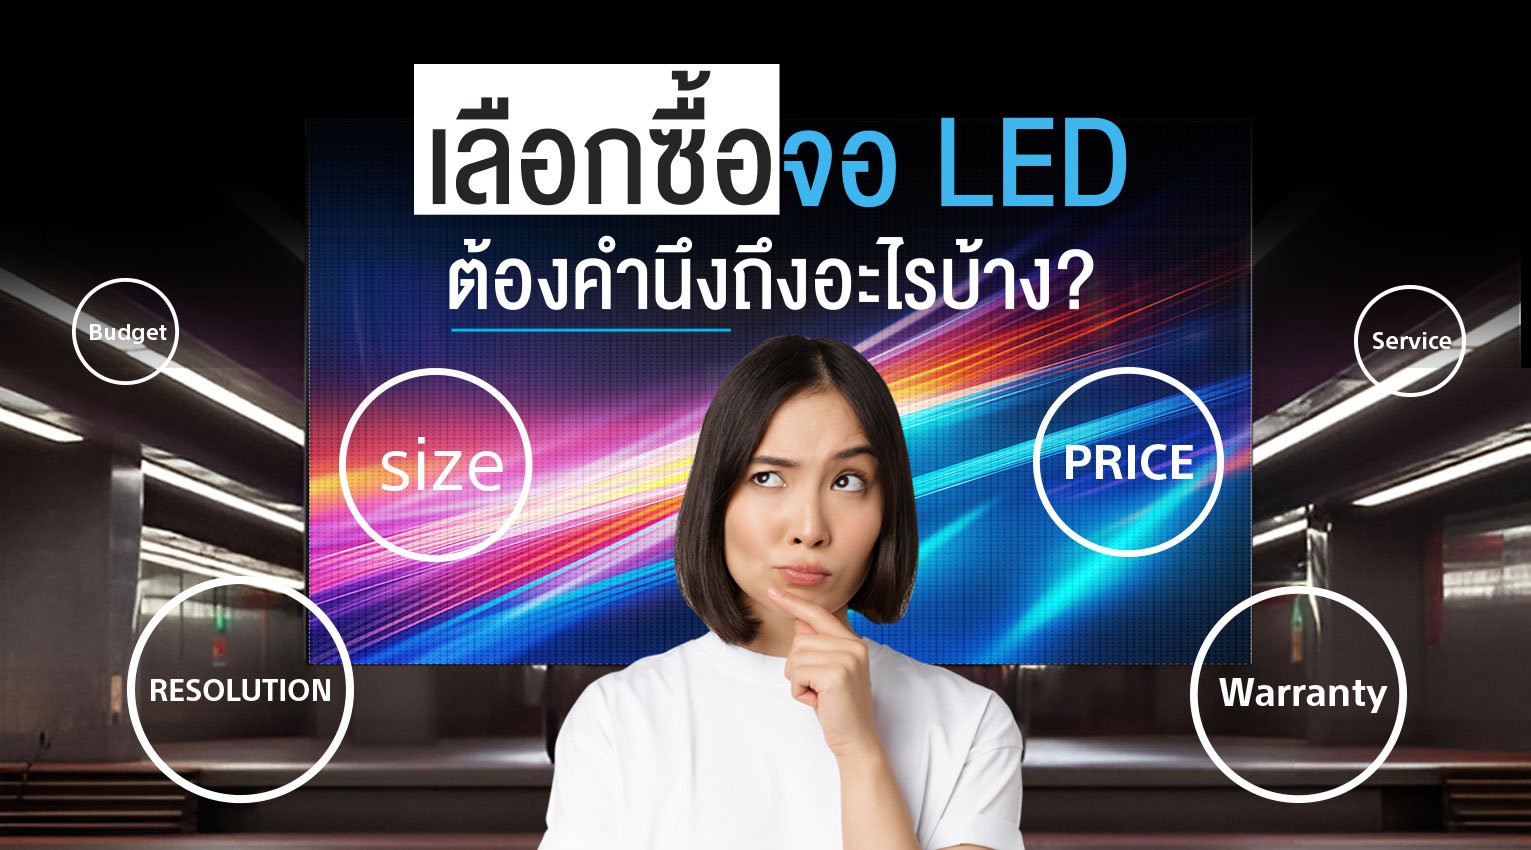 วิธีการเลือกซื้อ “จอ LED” ที่เหมาะกับการใช้งาน และการใช้งาน “จอ LED” ที่แตกต่างกัน